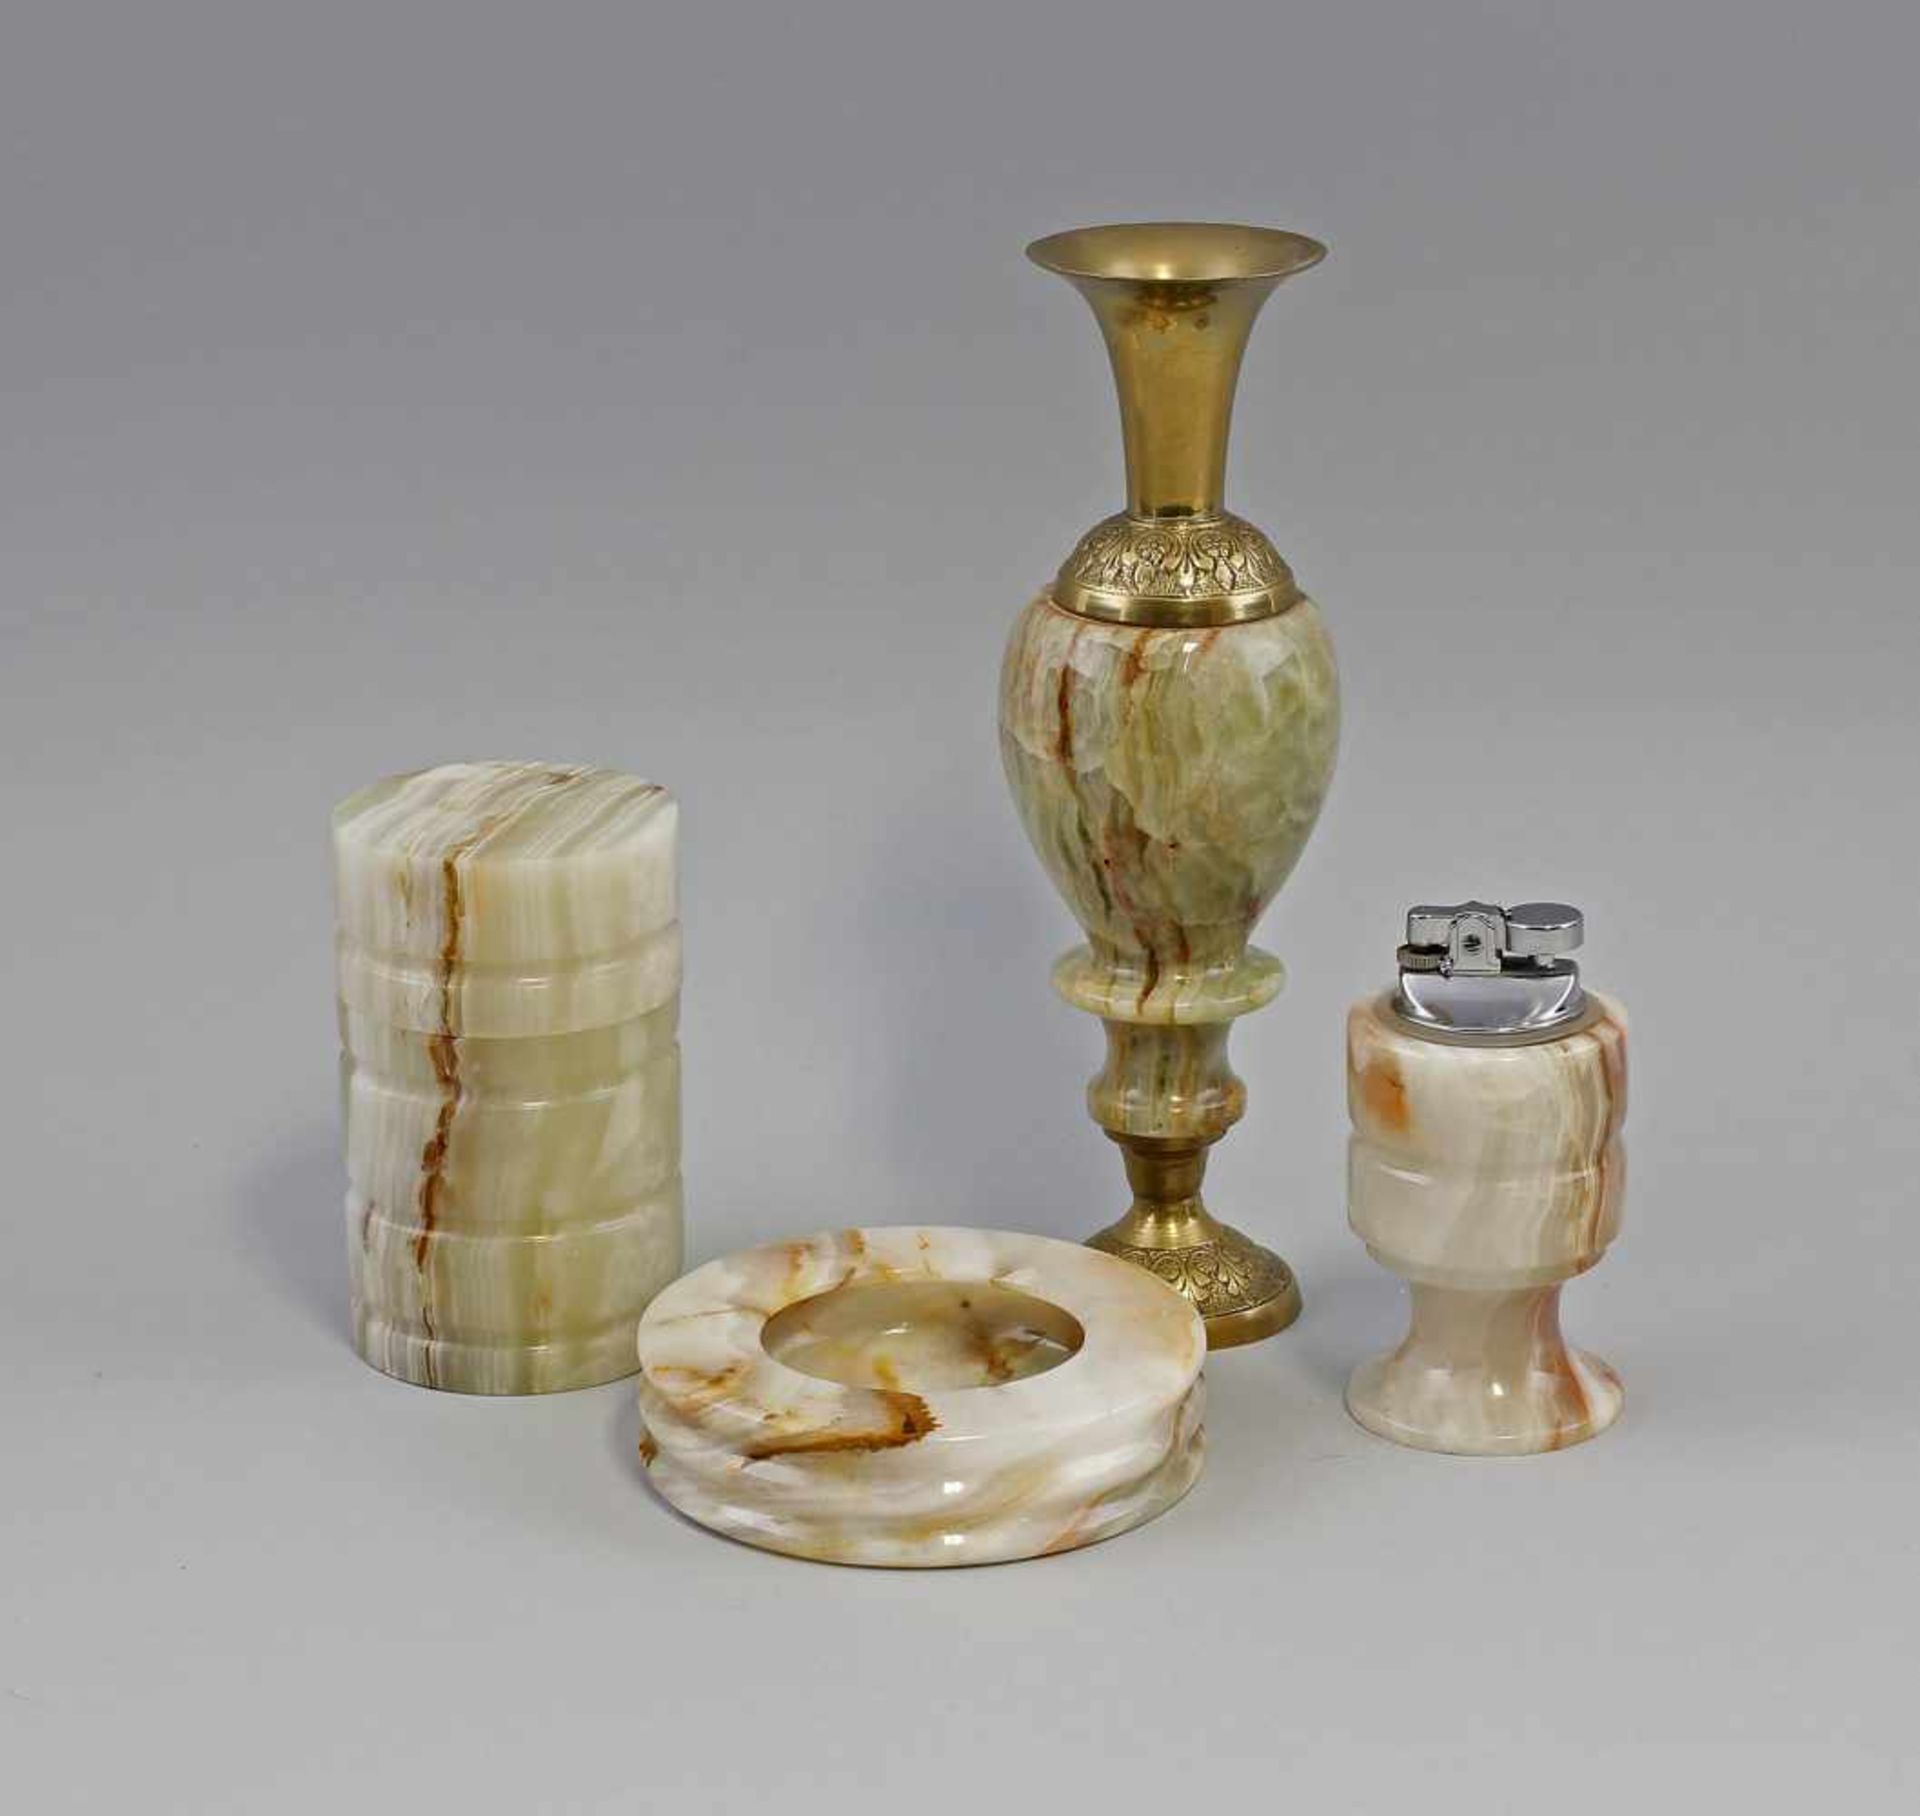 Rauchergarnitur Stein. 4-tlg., aus grün/braun-beige geädertem Stein (Onymarmor?), dabei Vase mit